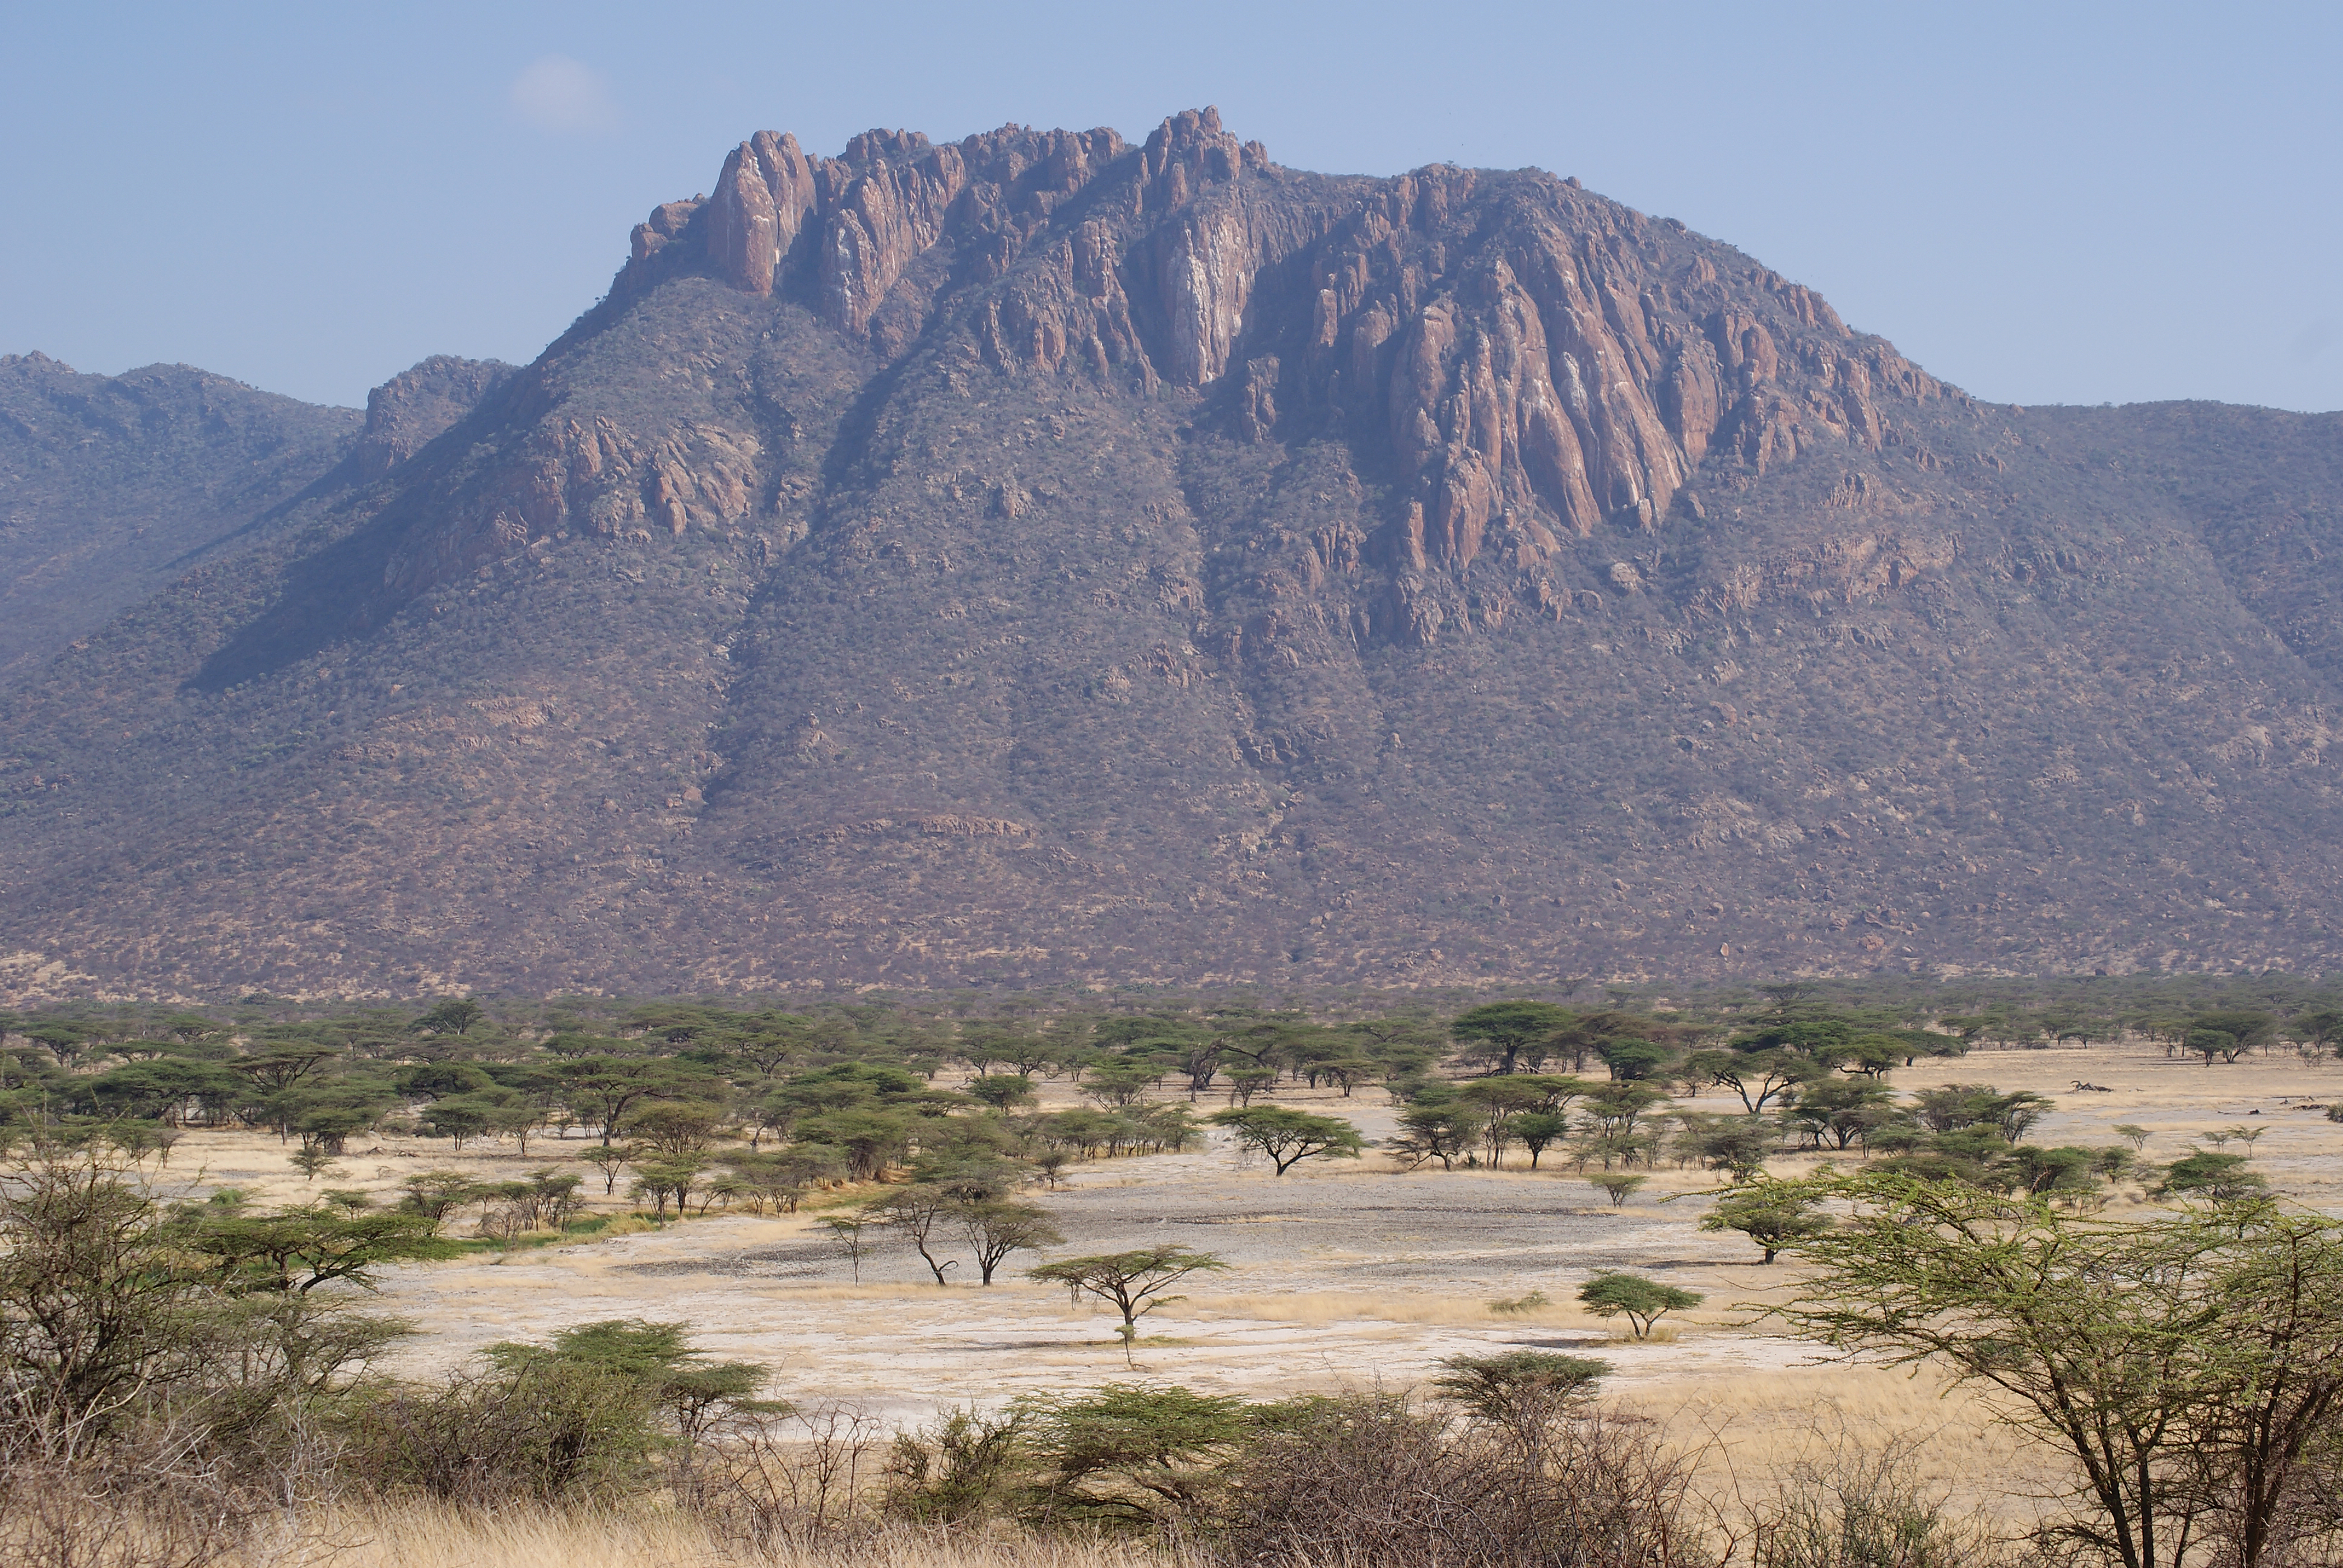 Kenya landscape